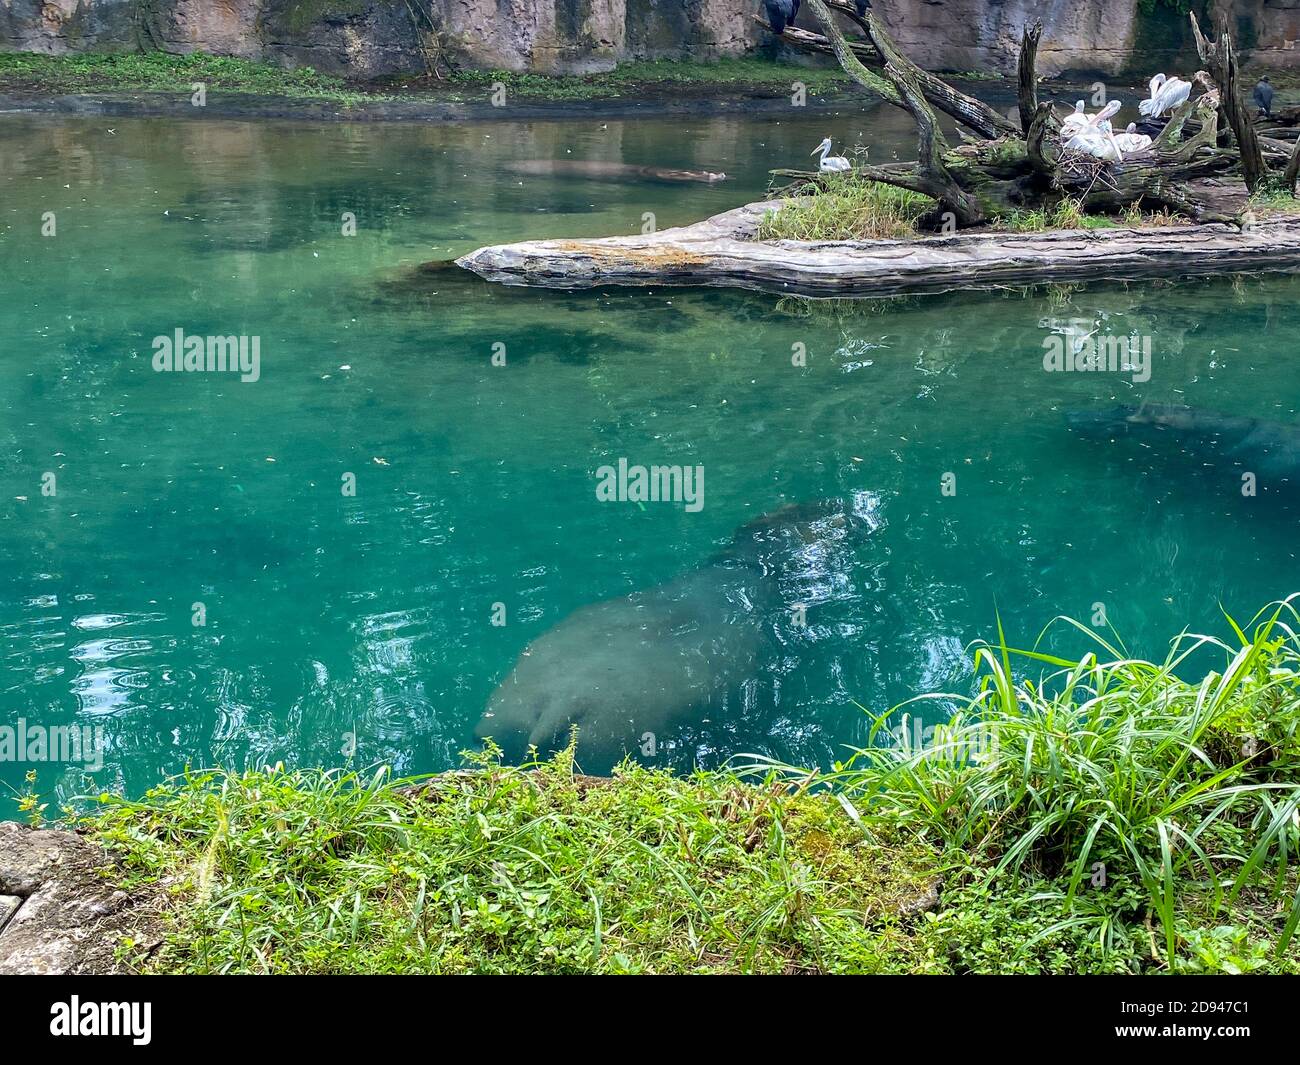 Ein Blühen von Hippopotamus in einem Zoo in einem Teich an einem hellen sonnigen Tag. Hippopotamus in einem Zoo schwimmen in einem Teich an einem hellen sonnigen Tag. Stockfoto